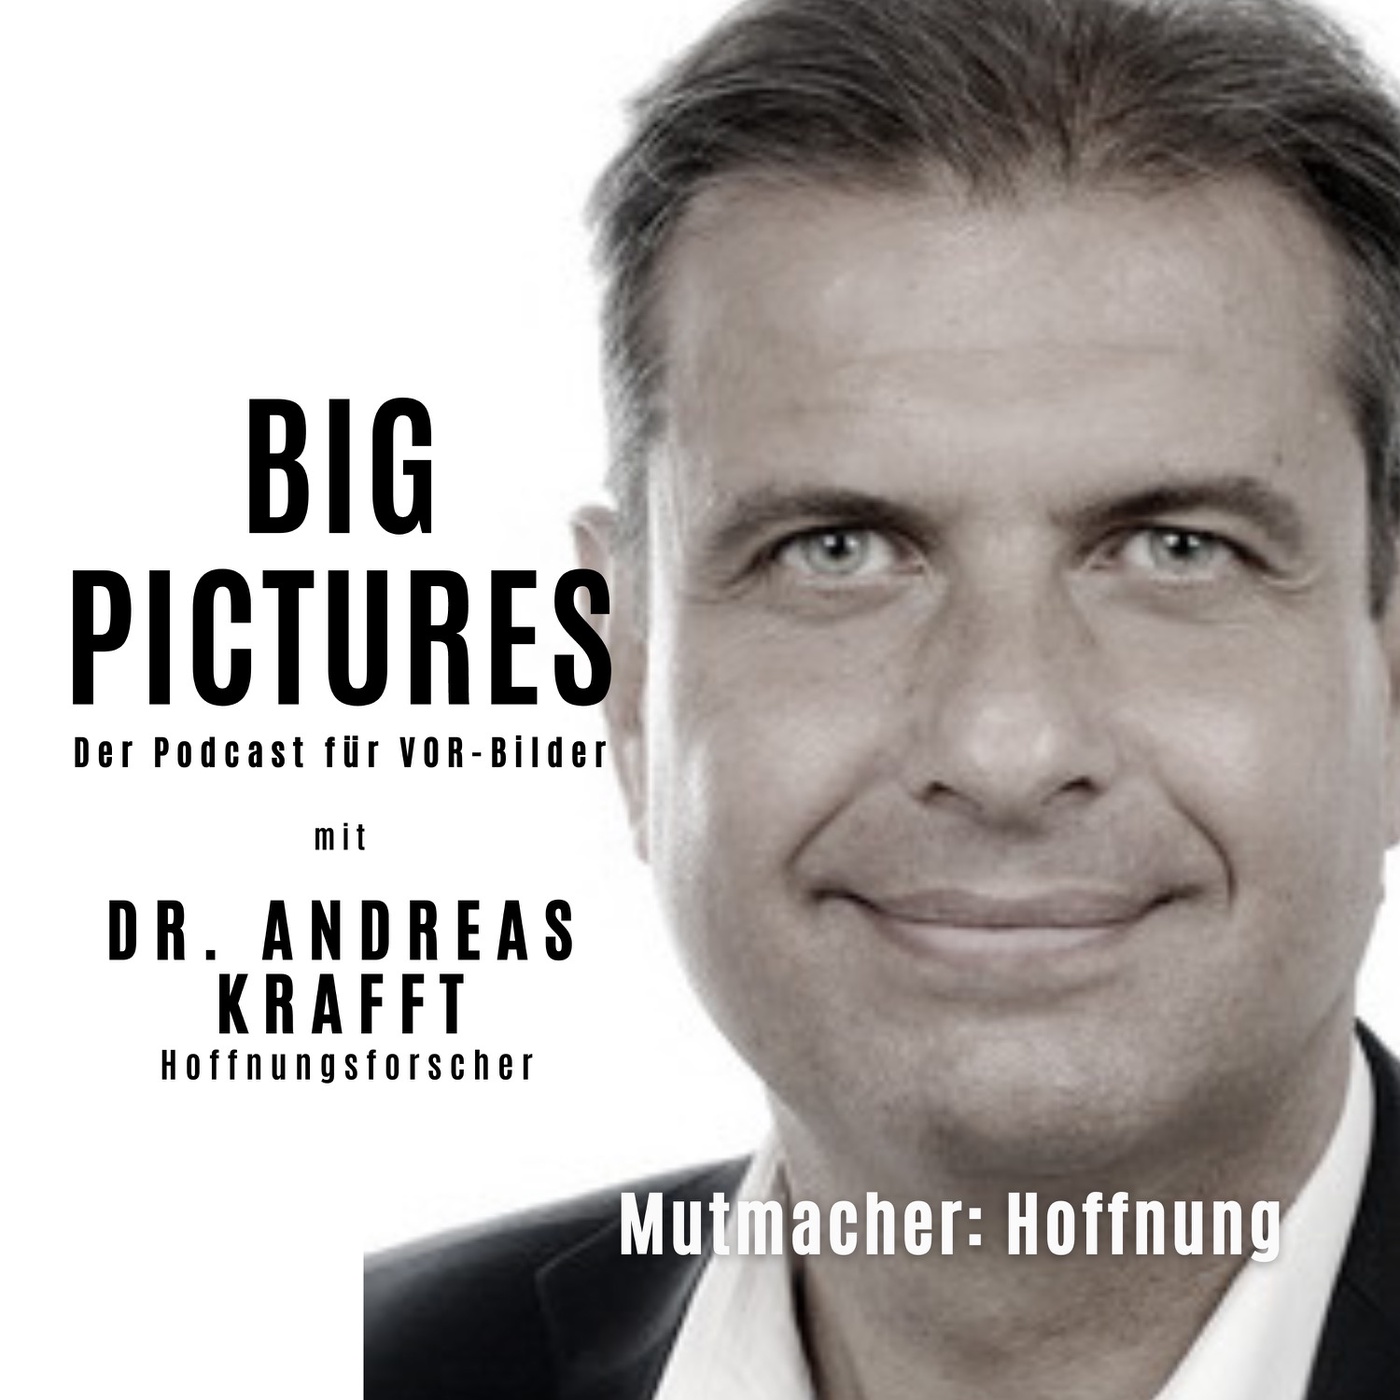 Dr. Andreas Krafft - Mutmacher: Hoffnung